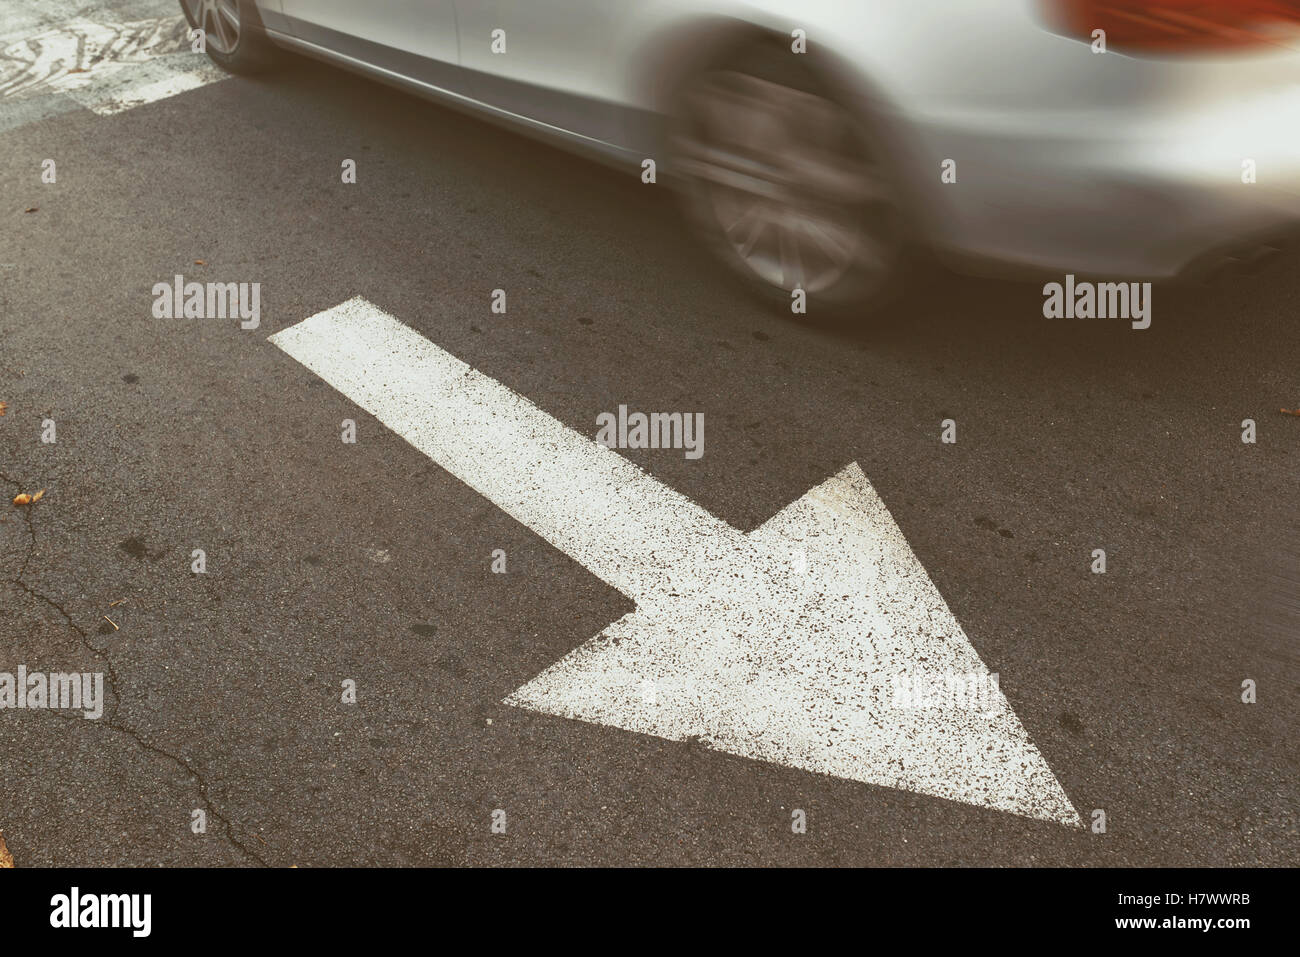 Autofahren in falsche Richtung gegen Pfeilzeichen, Verhalten im Straßenverkehr, so dass Straftat verboten Stockfoto